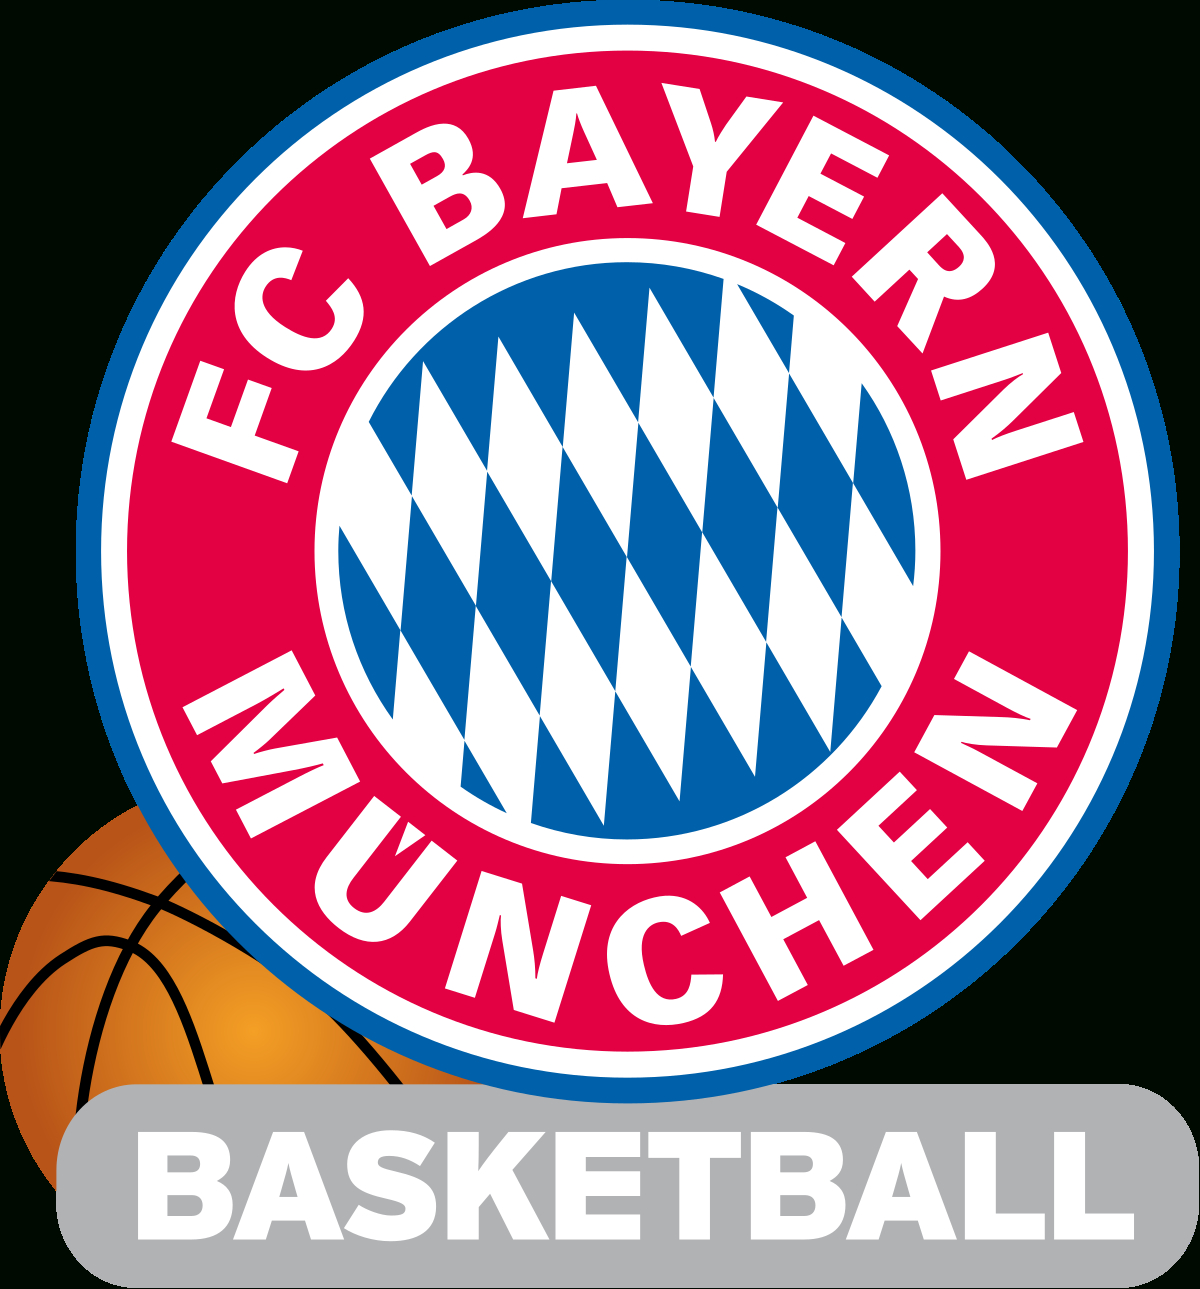 Fc Bayern München (Basketball) – Wikipedia über Fc Bayern München Wappen Zum Ausdrucken